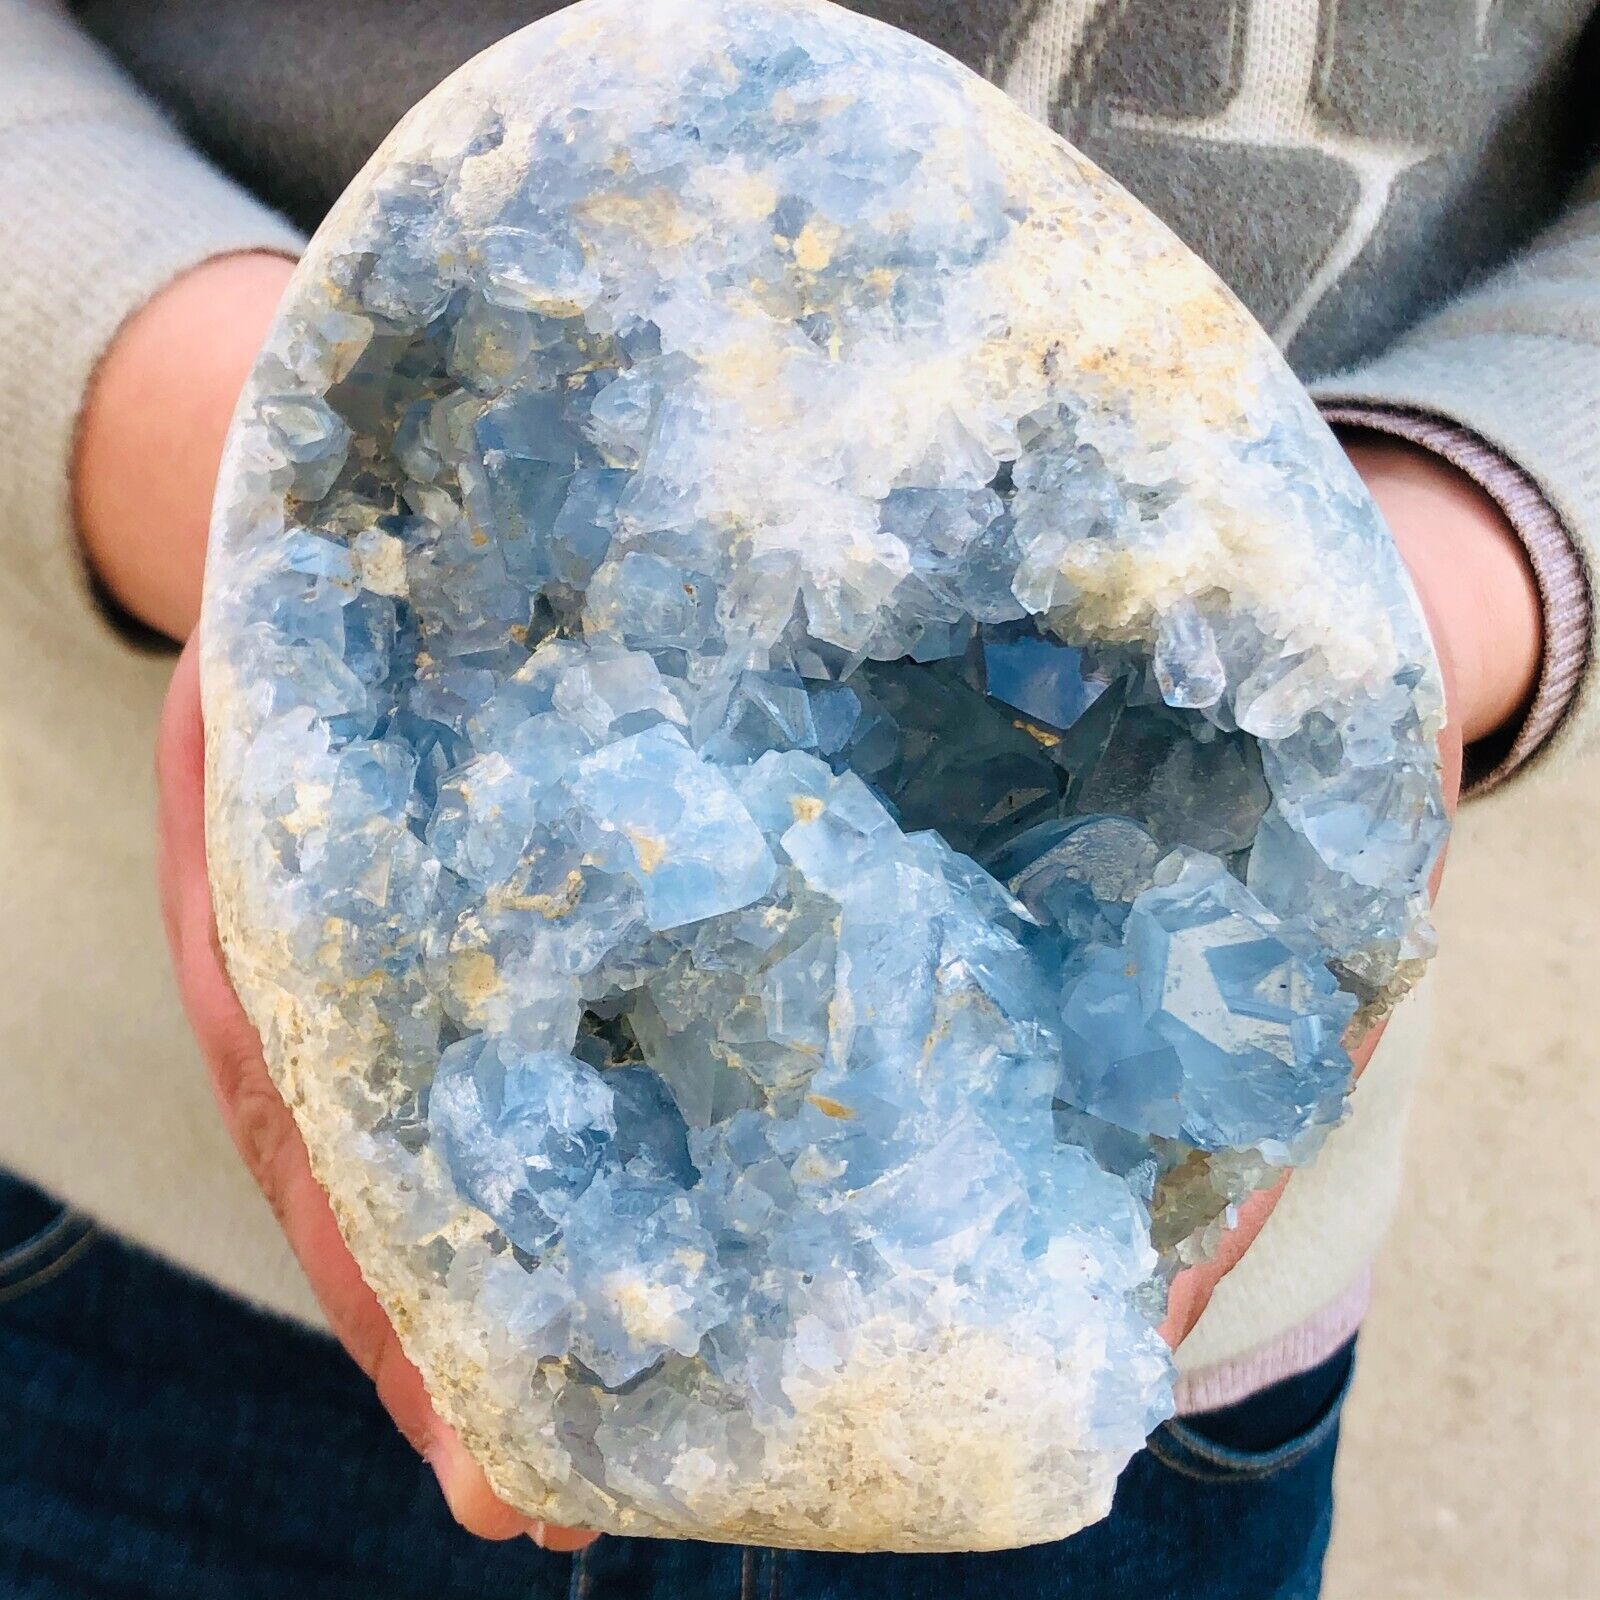 7.11lb Natural blue celestite geode quartz crystal mineral specimen healing